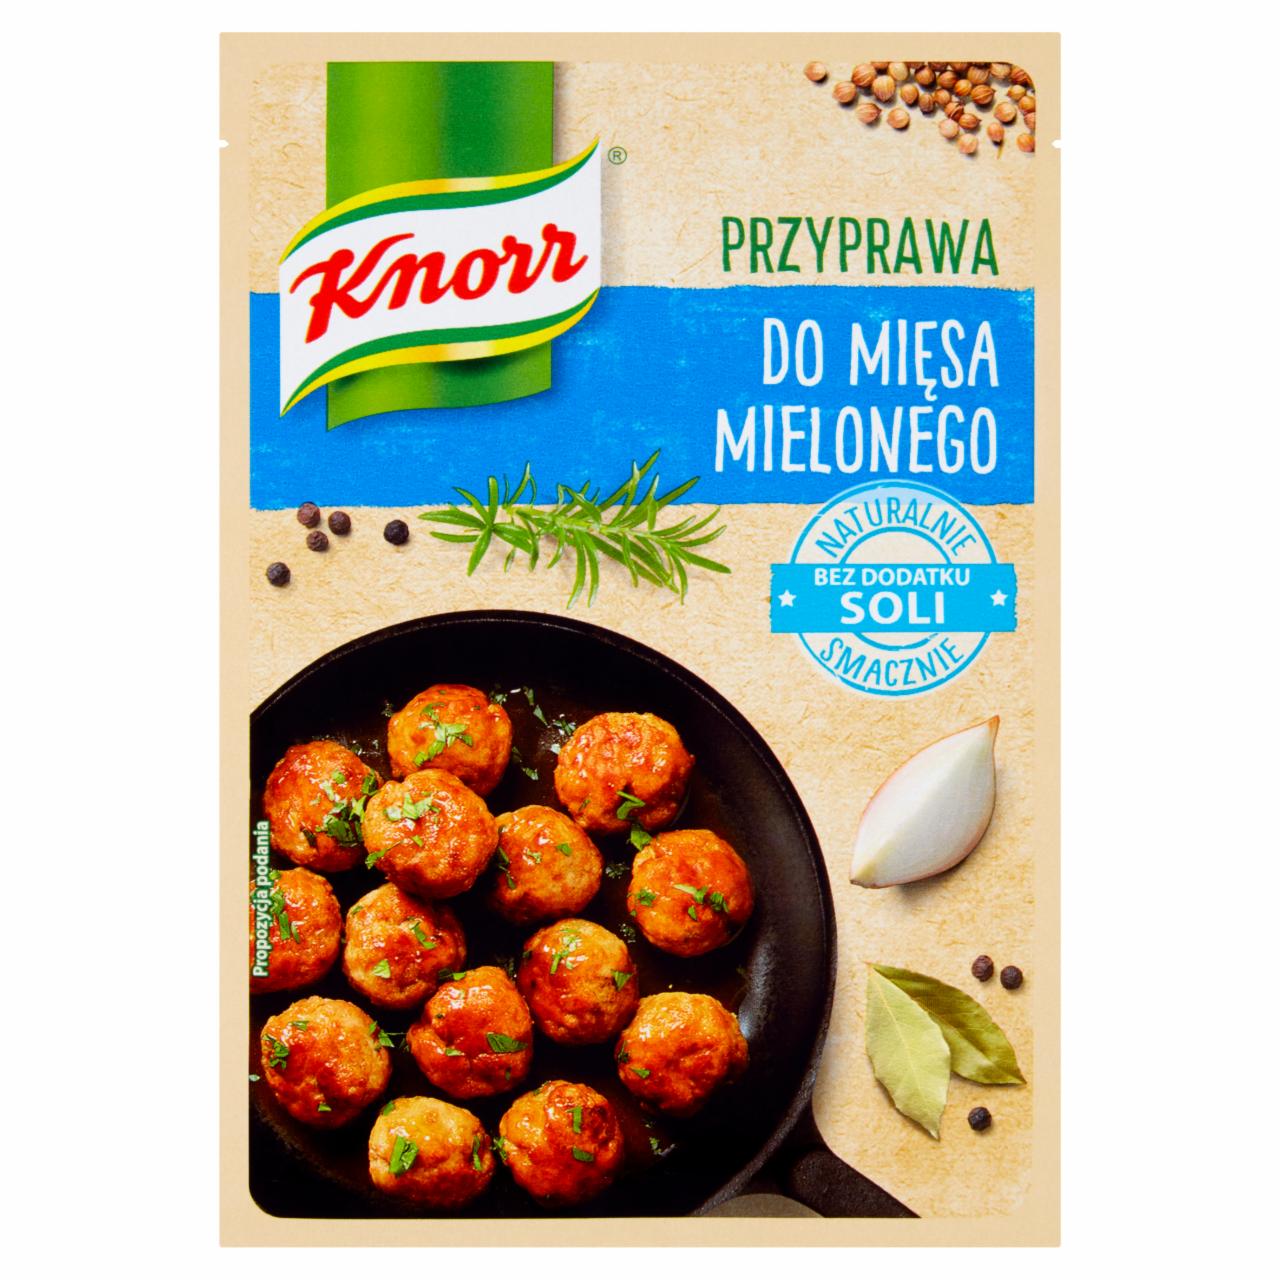 Zdjęcia - Knorr Przyprawa do mięsa mielonego 18 g